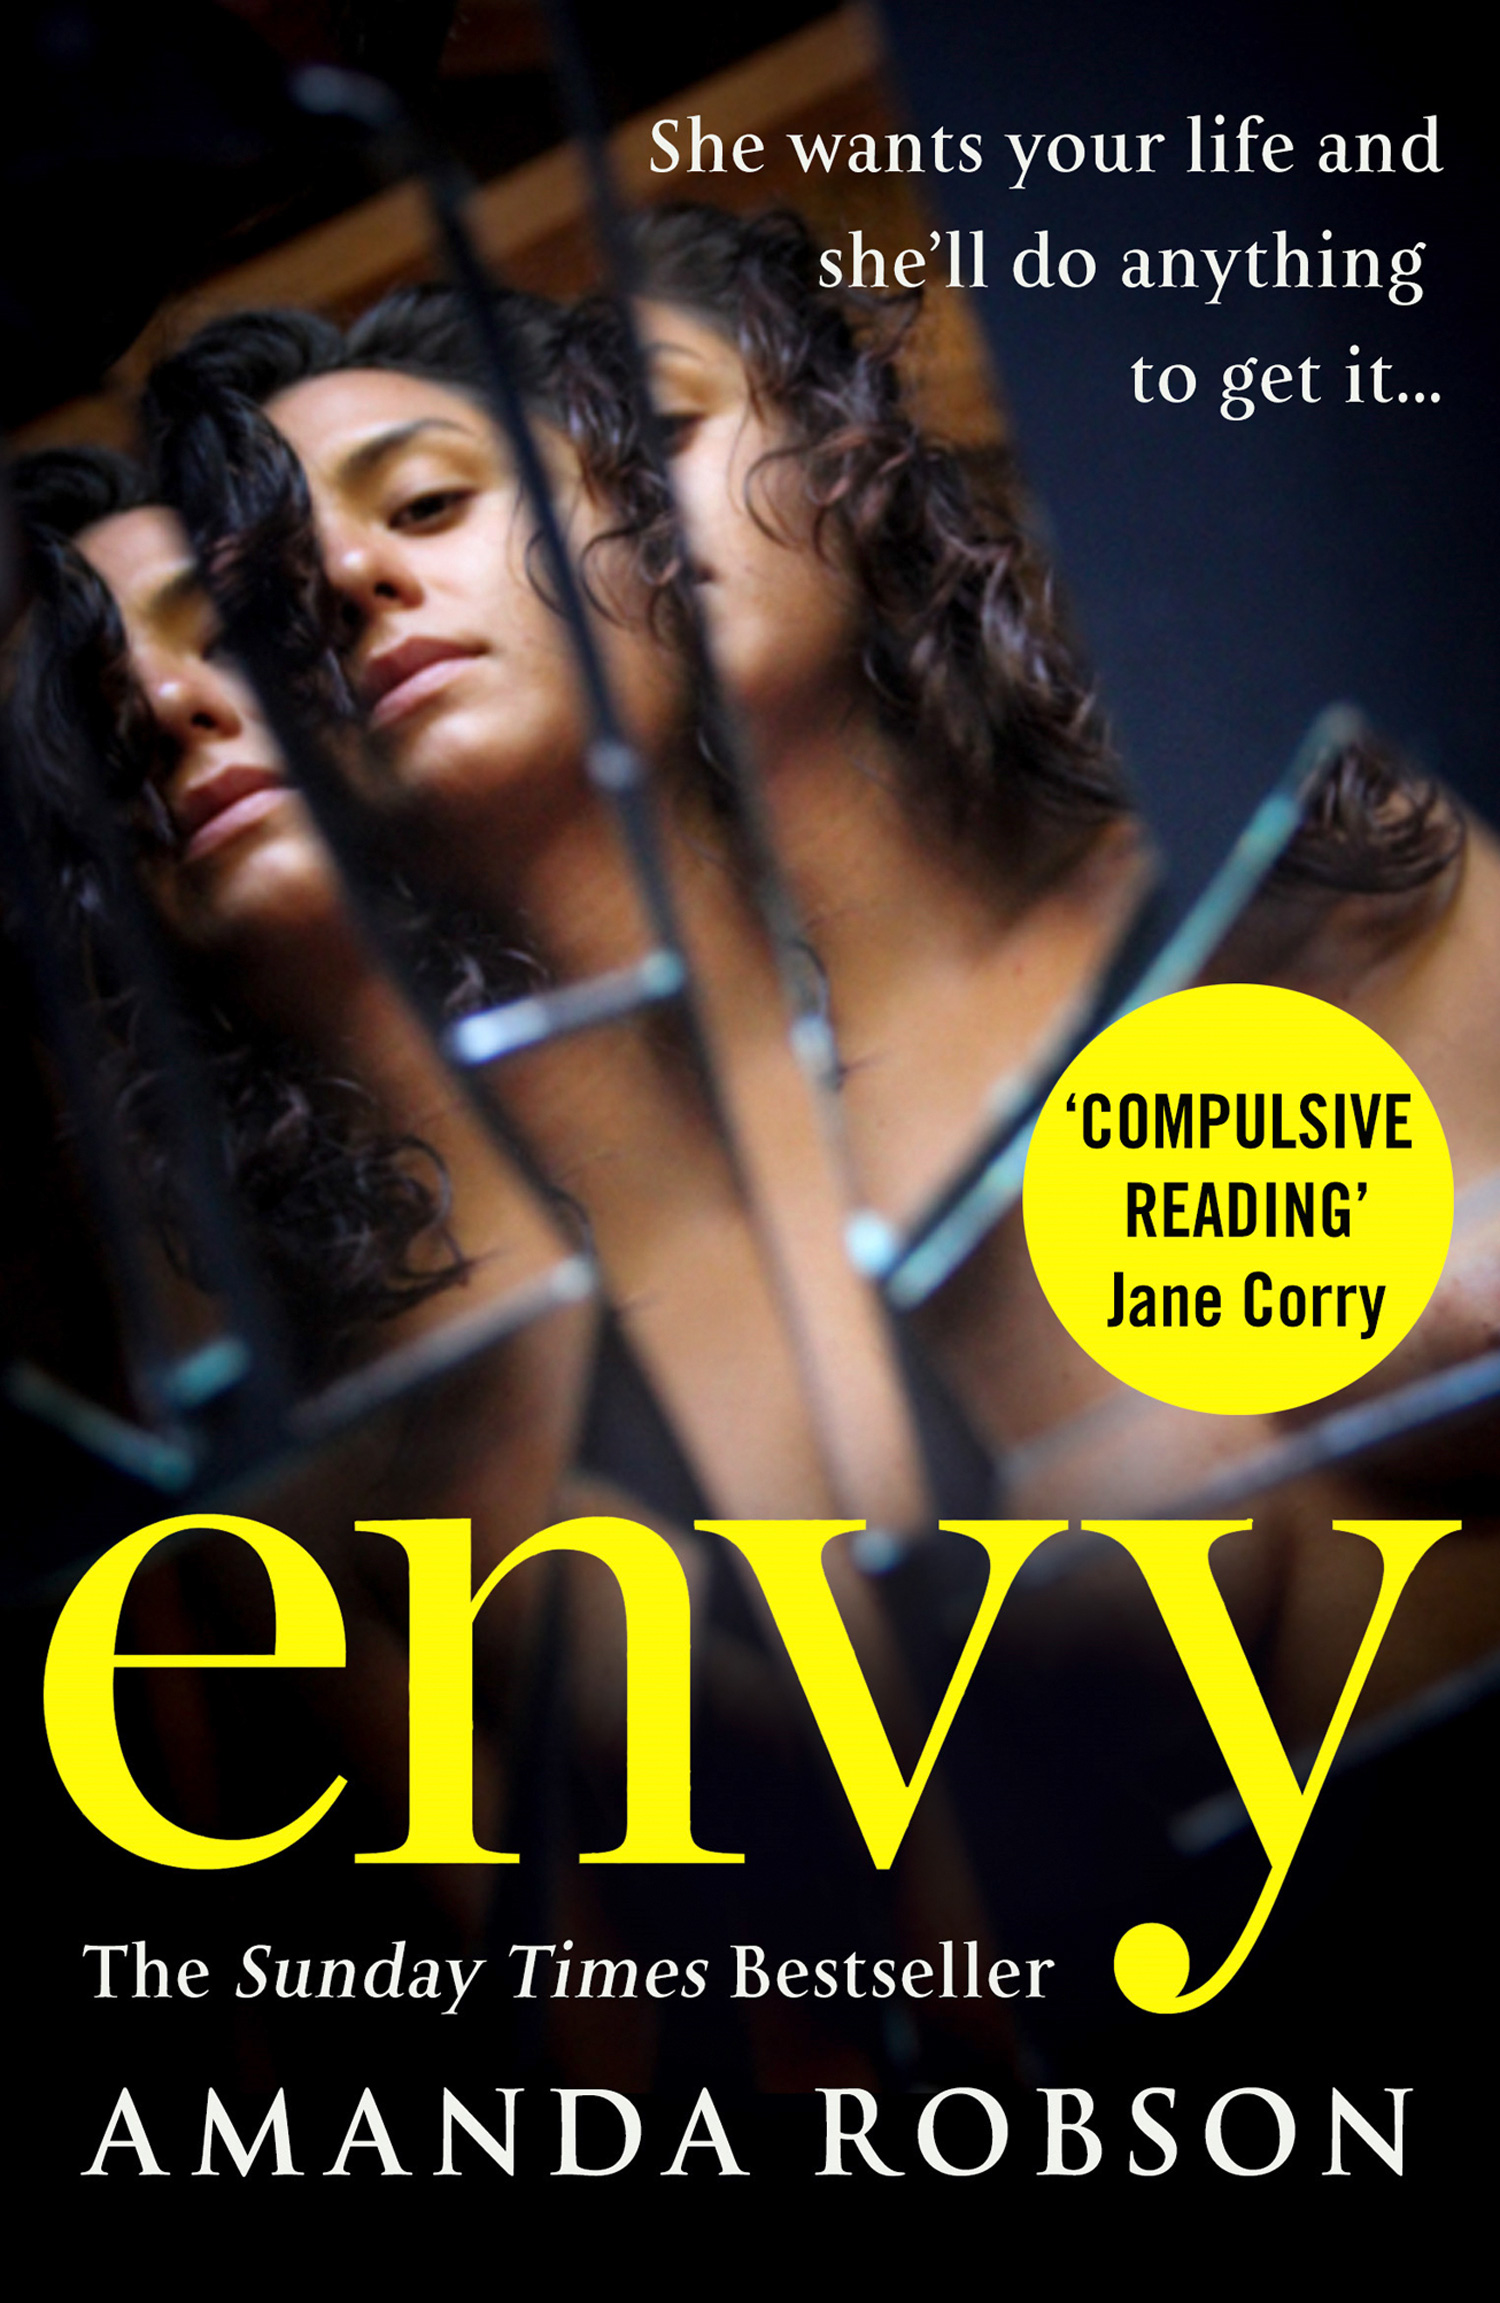 Книга Envy из серии , созданная Amanda Robson, может относится к жанру Современная зарубежная литература, Зарубежная психология. Стоимость электронной книги Envy с идентификатором 39776629 составляет 485.45 руб.